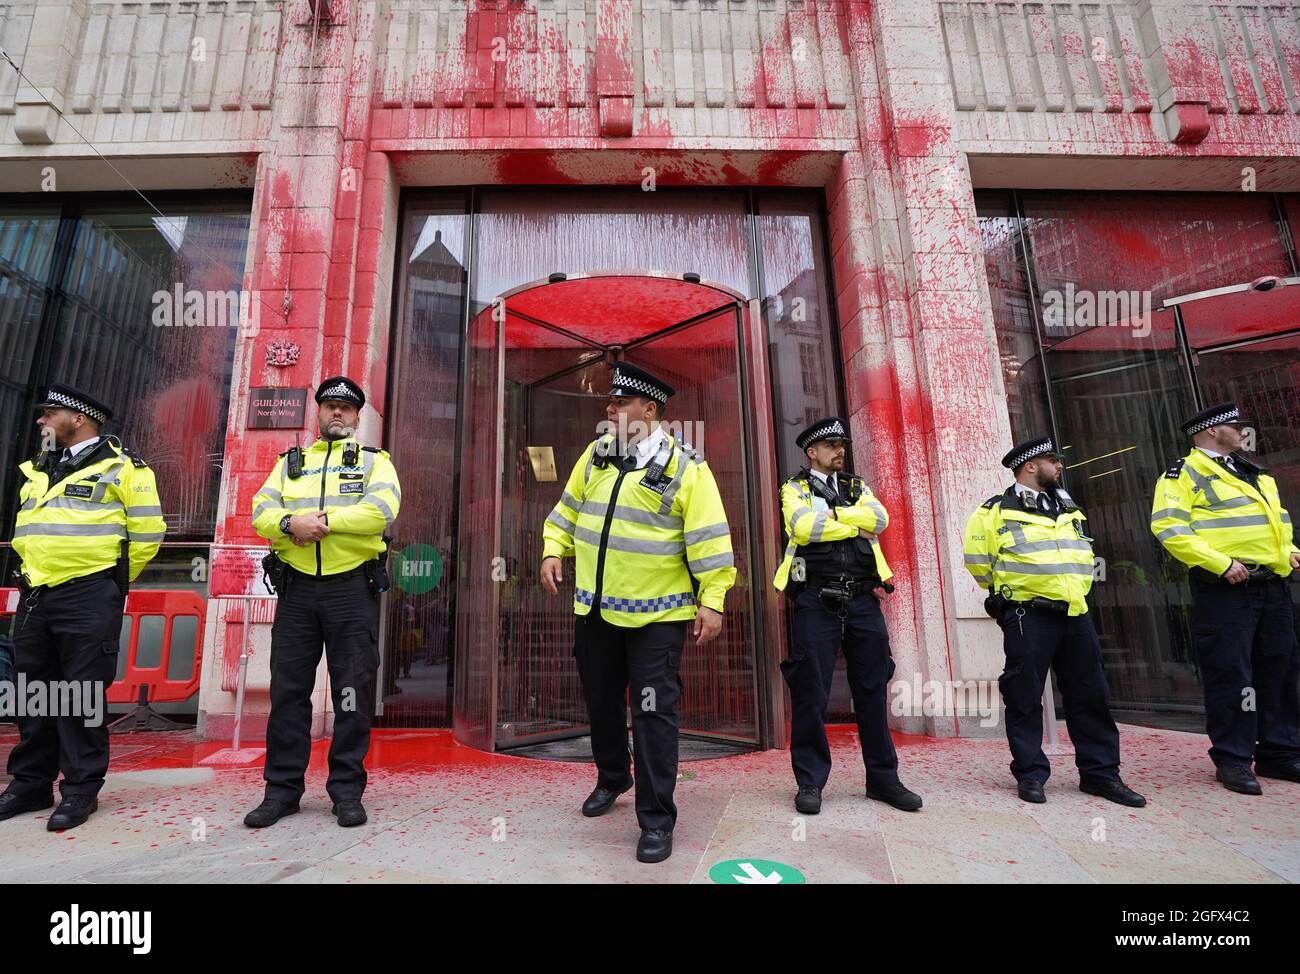 Gli ufficiali di polizia si trovano di fronte a uno degli edifici della Guildhall, che è stato scolorito, mentre una protesta della ribellione dell'estinzione si fa strada attraverso la città di Londra. Data foto: Venerdì 27 agosto 2021. Foto Stock